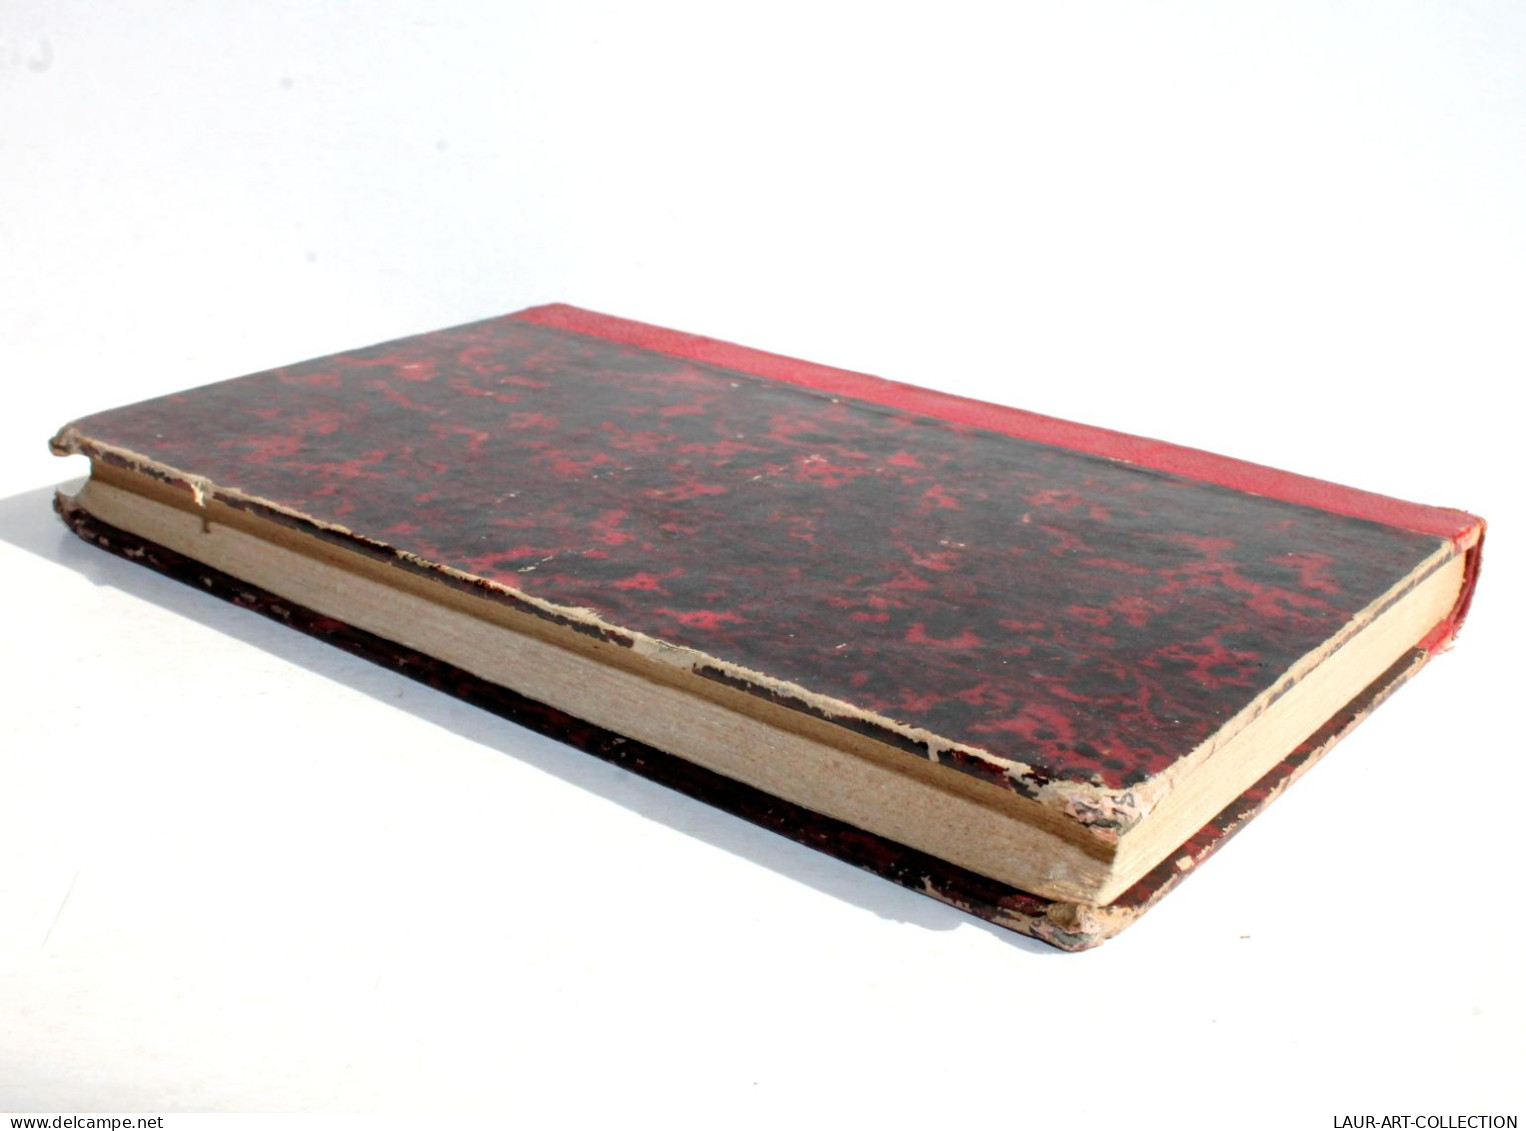 POESIES COMPLETES DU COMTE ALFRED DE VIGNY 6e EDITION 1852 CHARPENTIER / ANCIEN LIVRE FRANCAIS (1803.8) - Französische Autoren